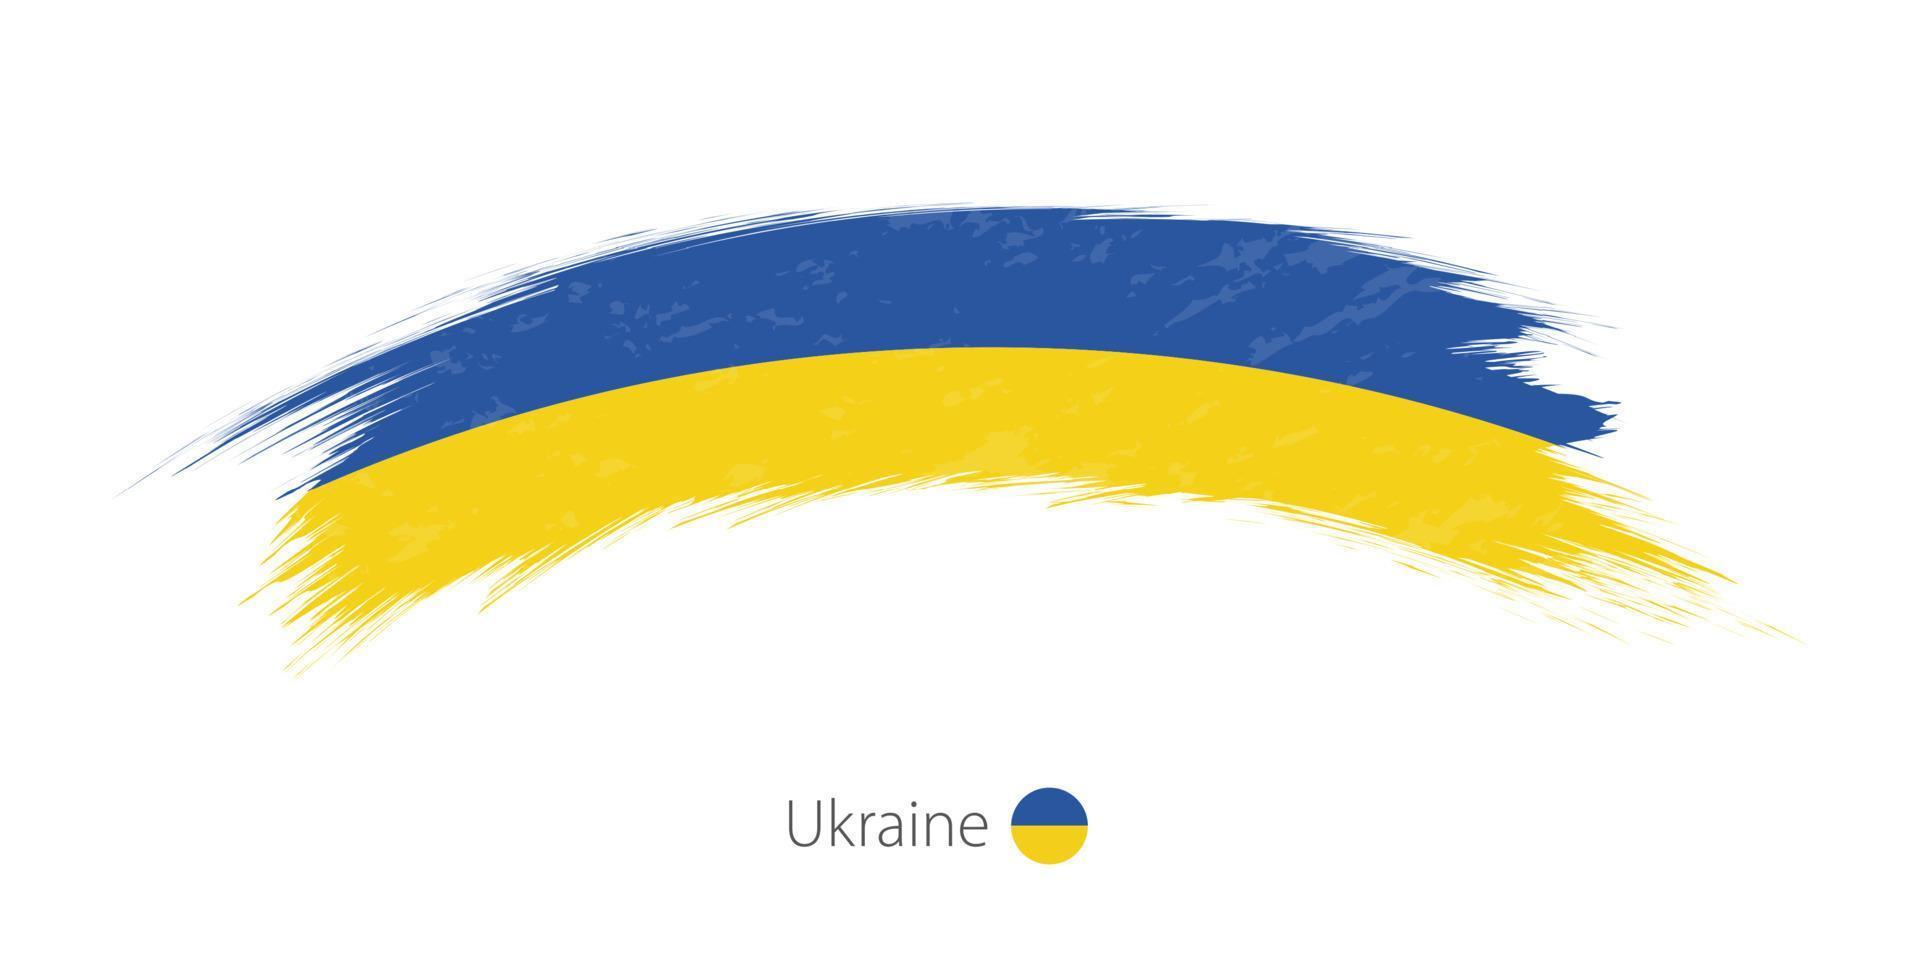 Ukrainas flagga i rundad grunge penseldrag. vektor